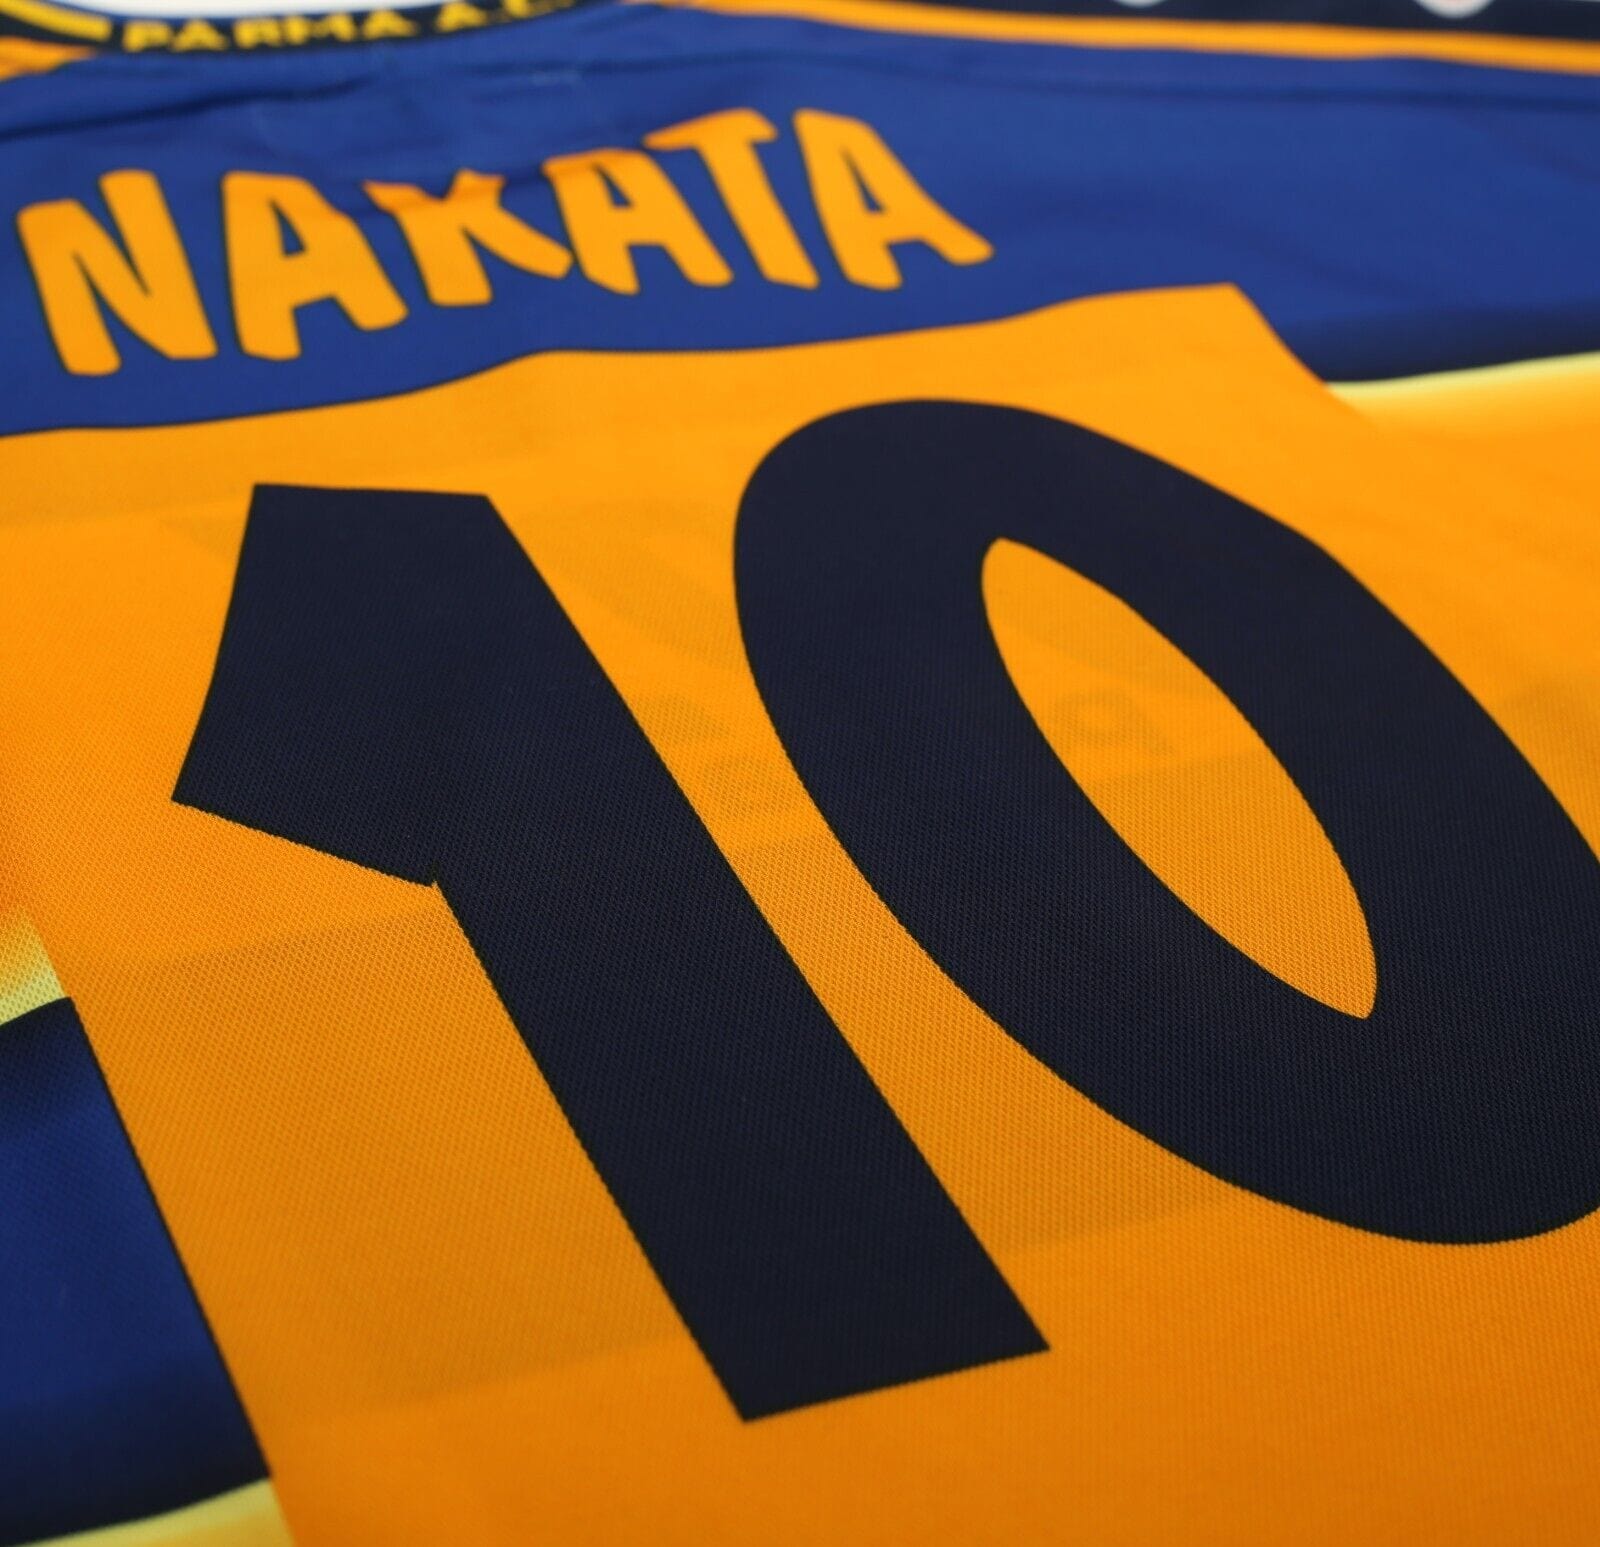 2001/02 NAKATA #10 Parma Vintage Champion Home Football Shirt